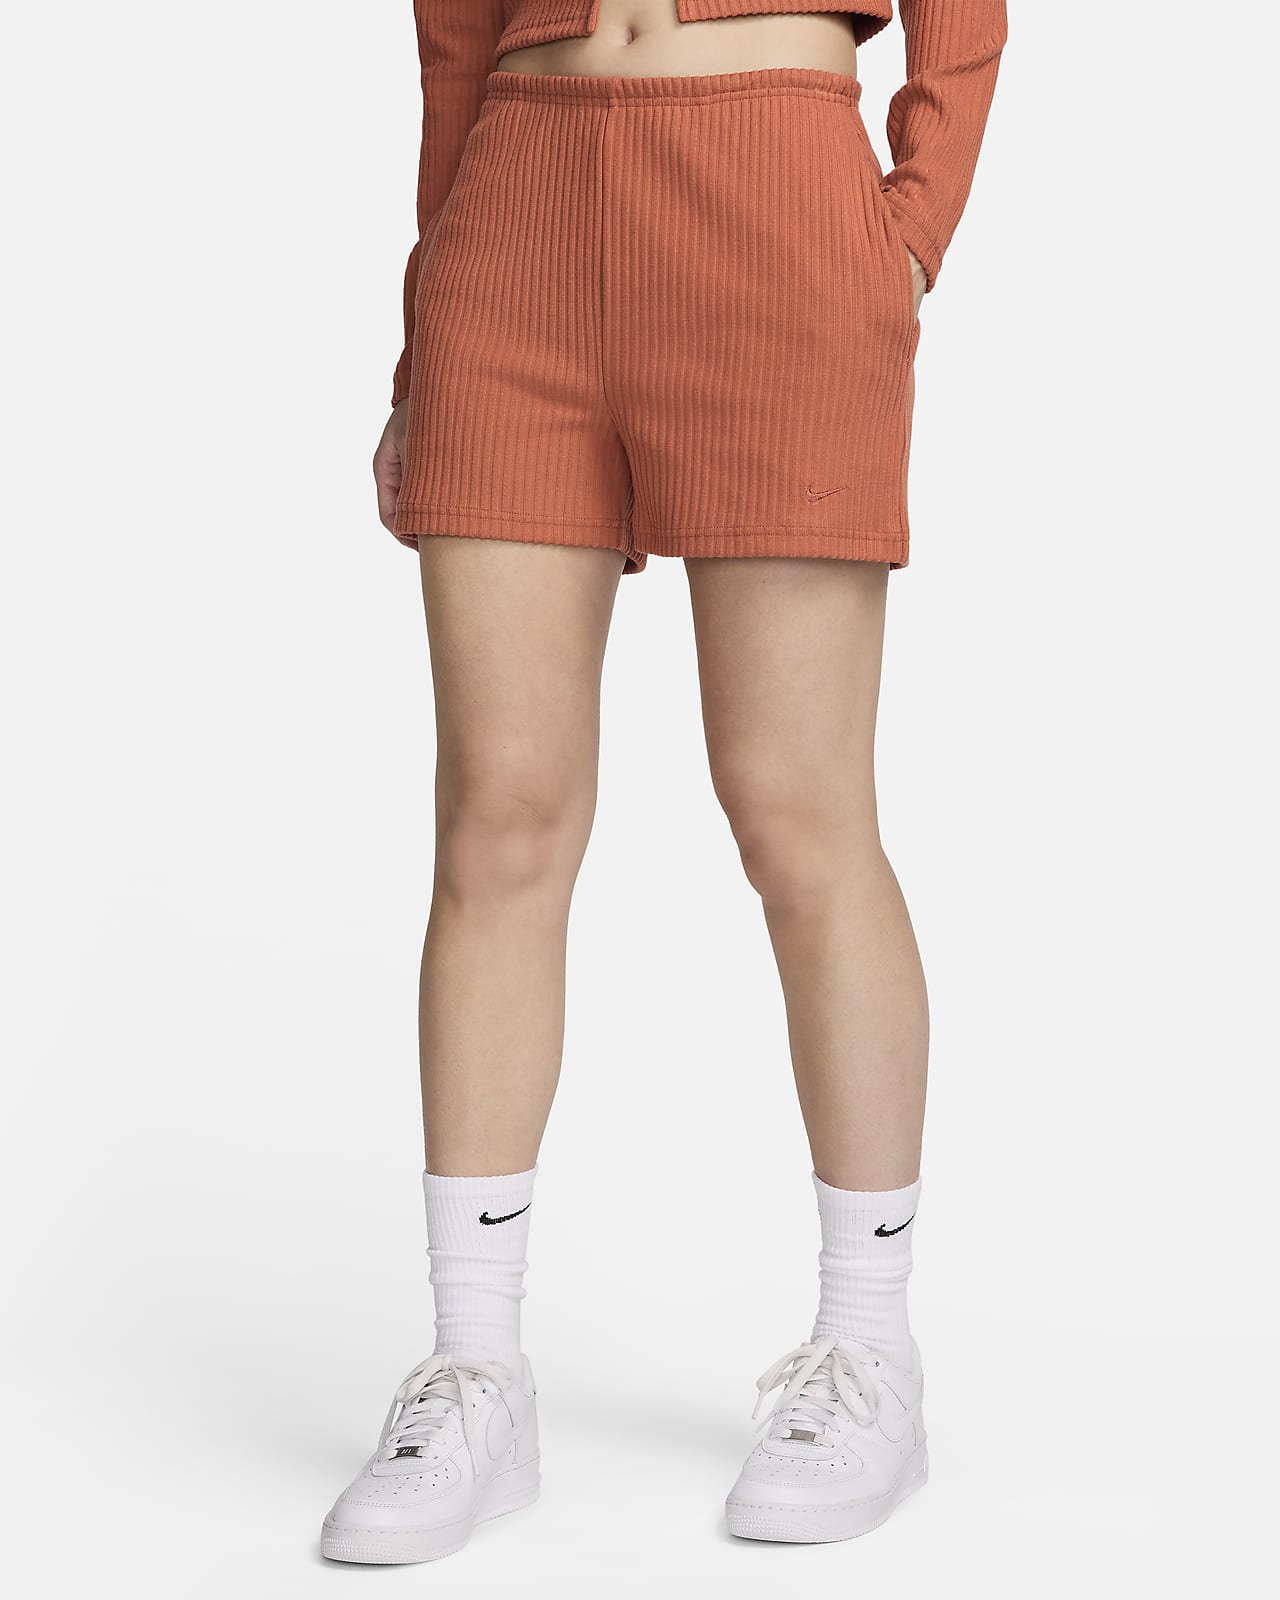 Γυναικείο ψηλόμεσο σορτς σε στενή γραμμή με ριμπ ύφανση Nike Sportswear Chill Knit 8 cm